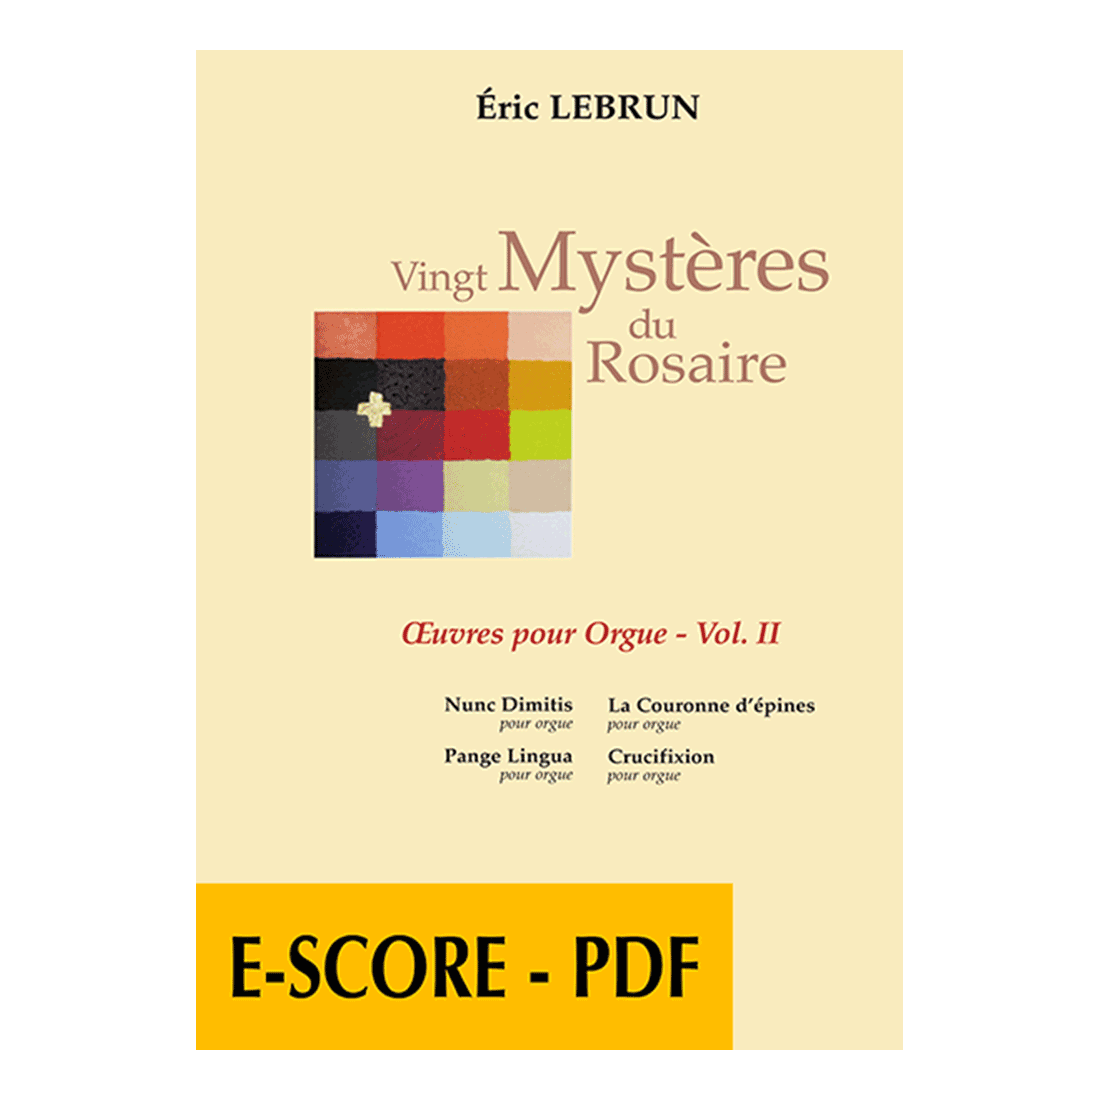 Vingt mystères du Rosaire - Orgelwerke Band 2 - E-score PDF